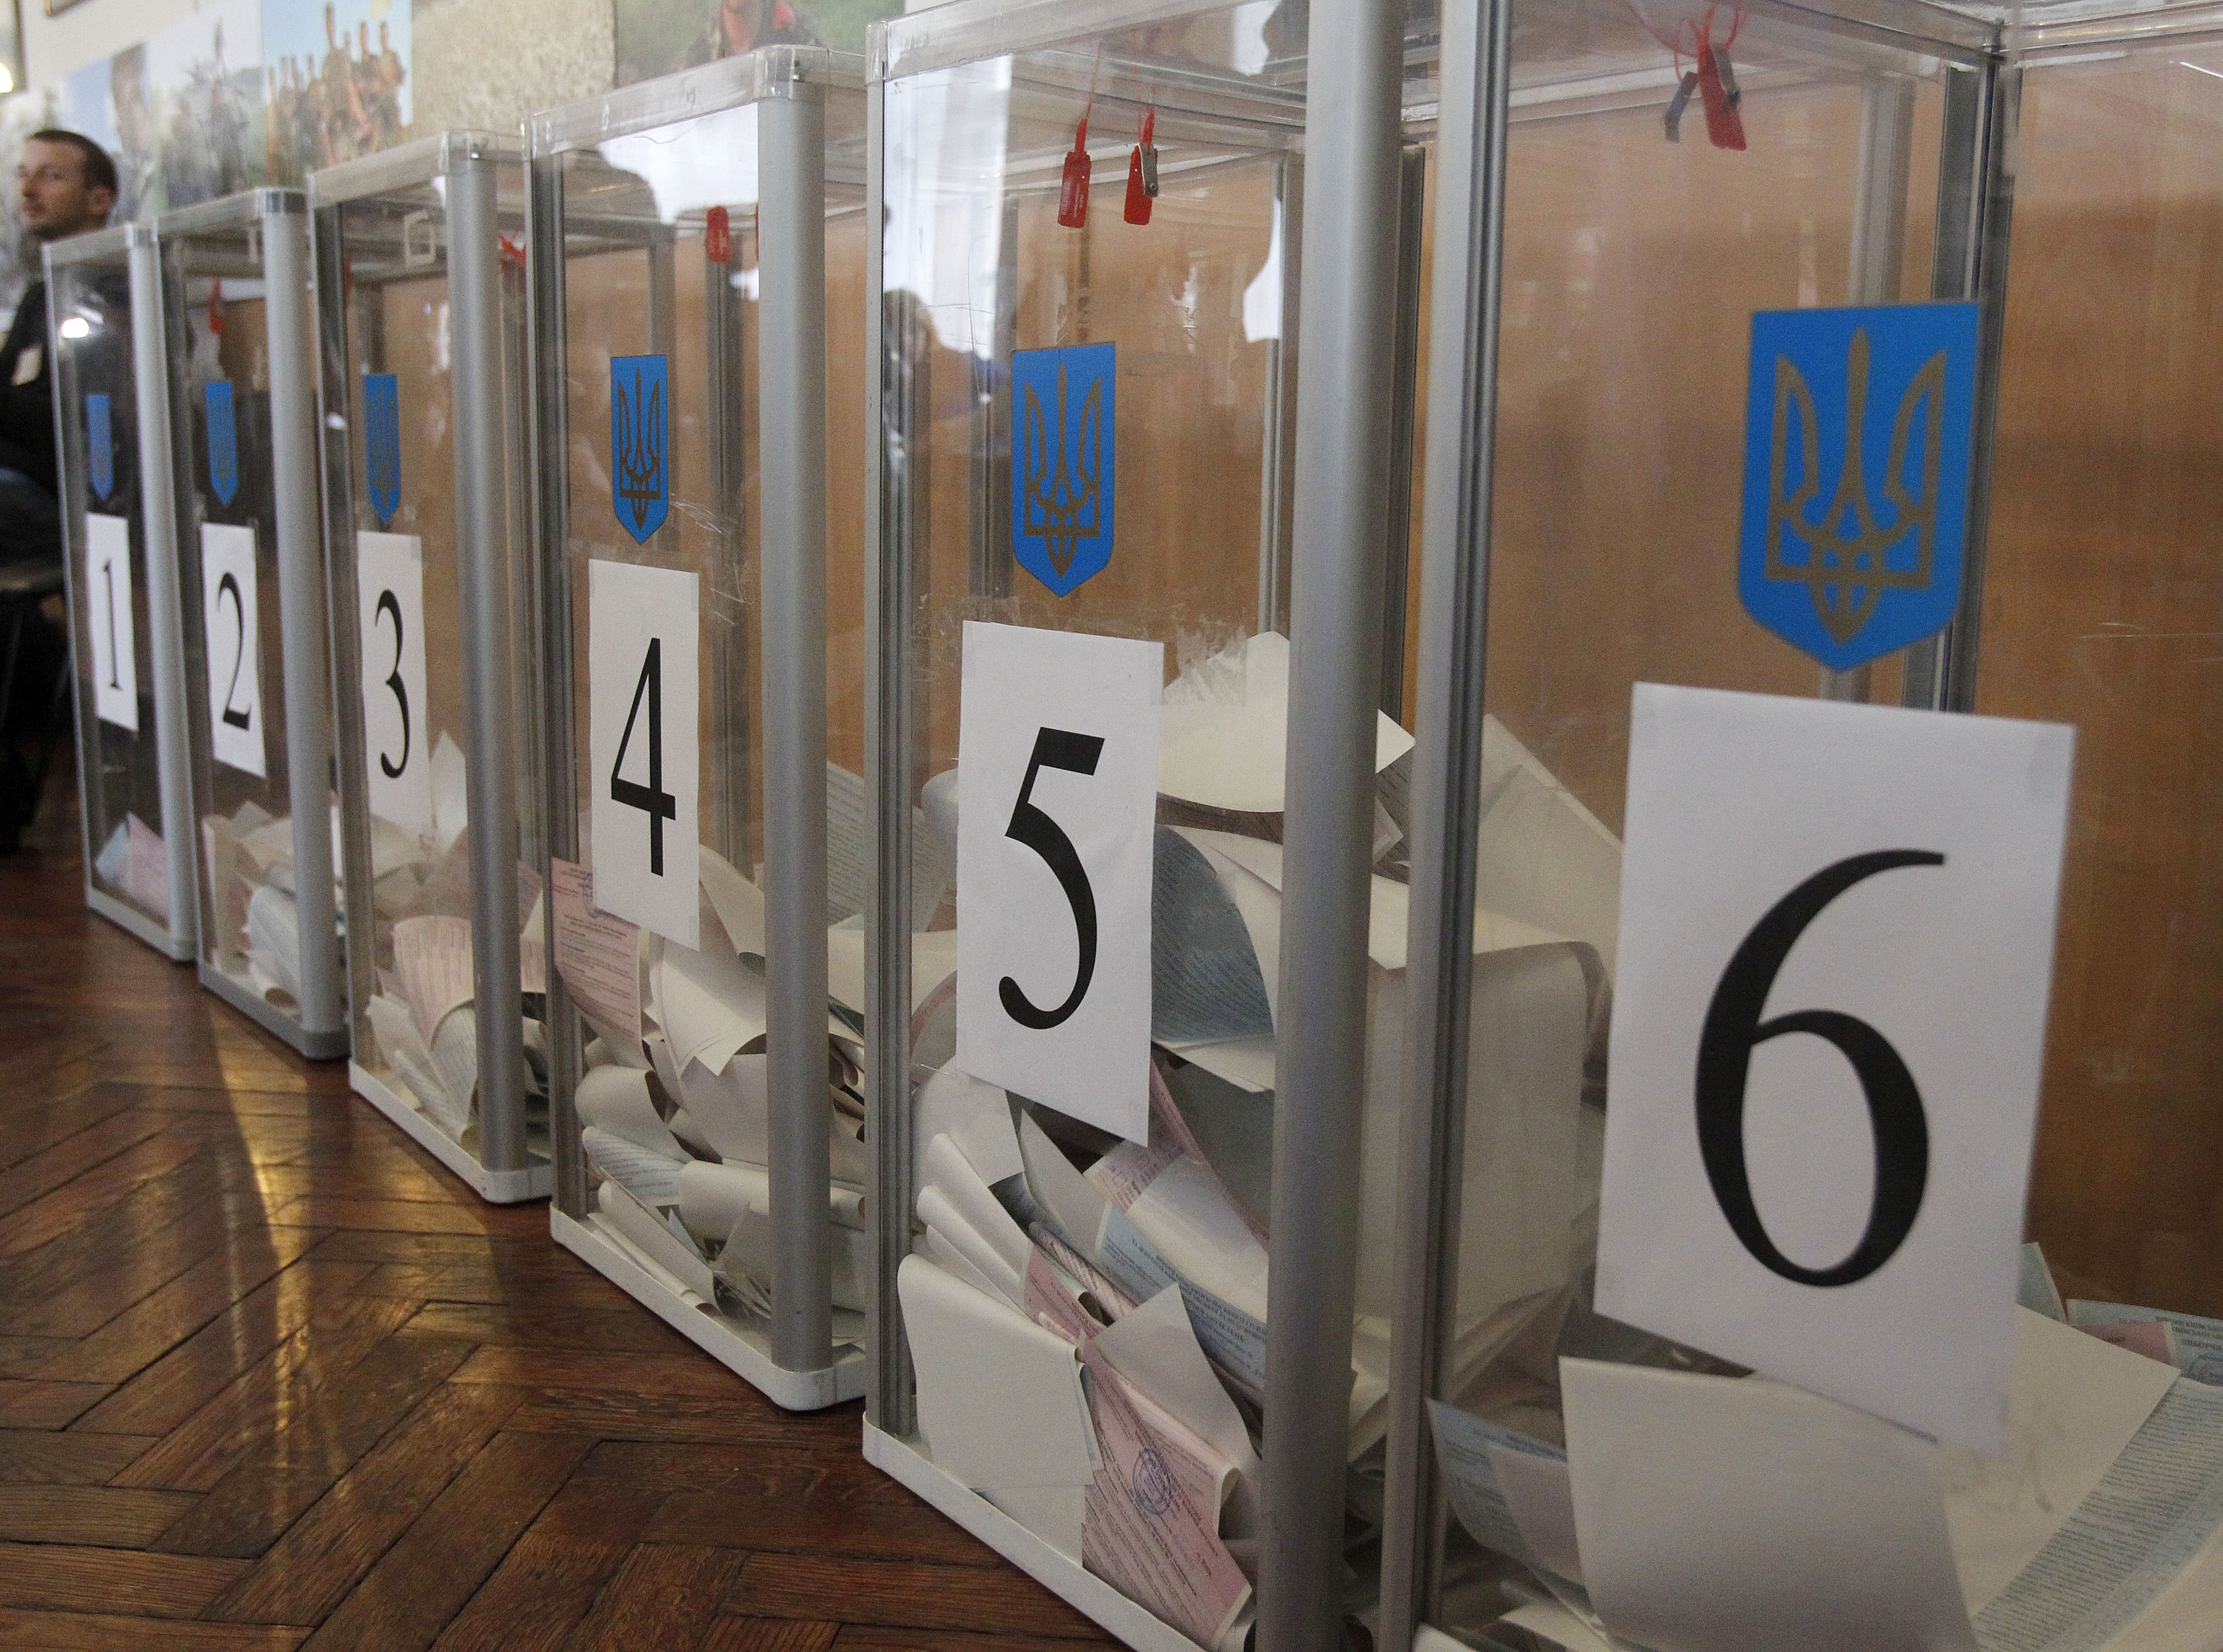 У Чернівцях проходить другий тур виборів міського голови: дільниці відкрилися вчасно, порушень немає